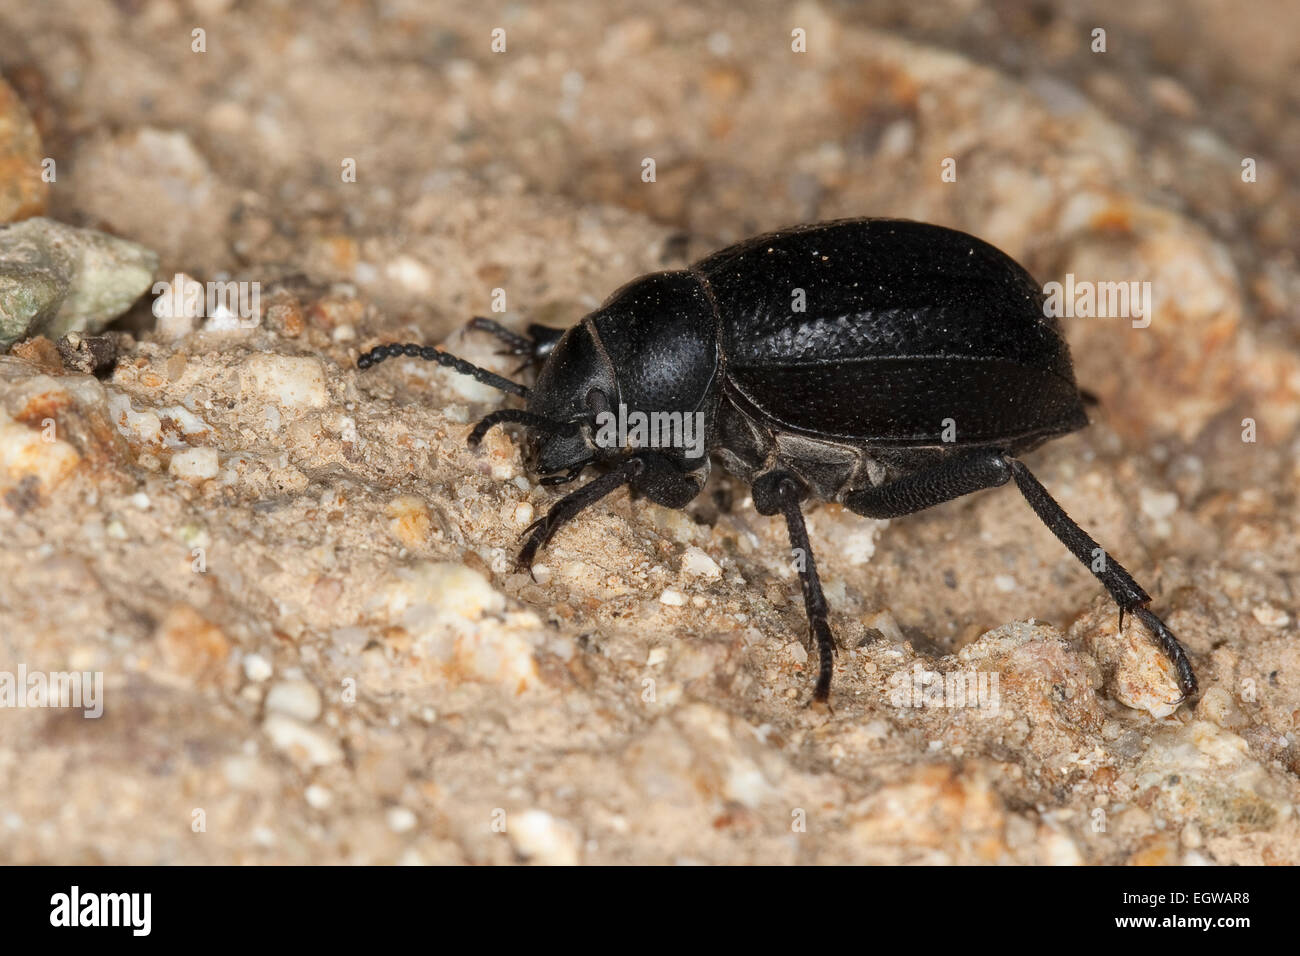 darkling beetle, Feistkäfer, Schwarzkäfer, Pimelia spec., Pimelia cf. payraudi, Pimeliariae, Dunkelkäfer, Tenebrionidae Stock Photo